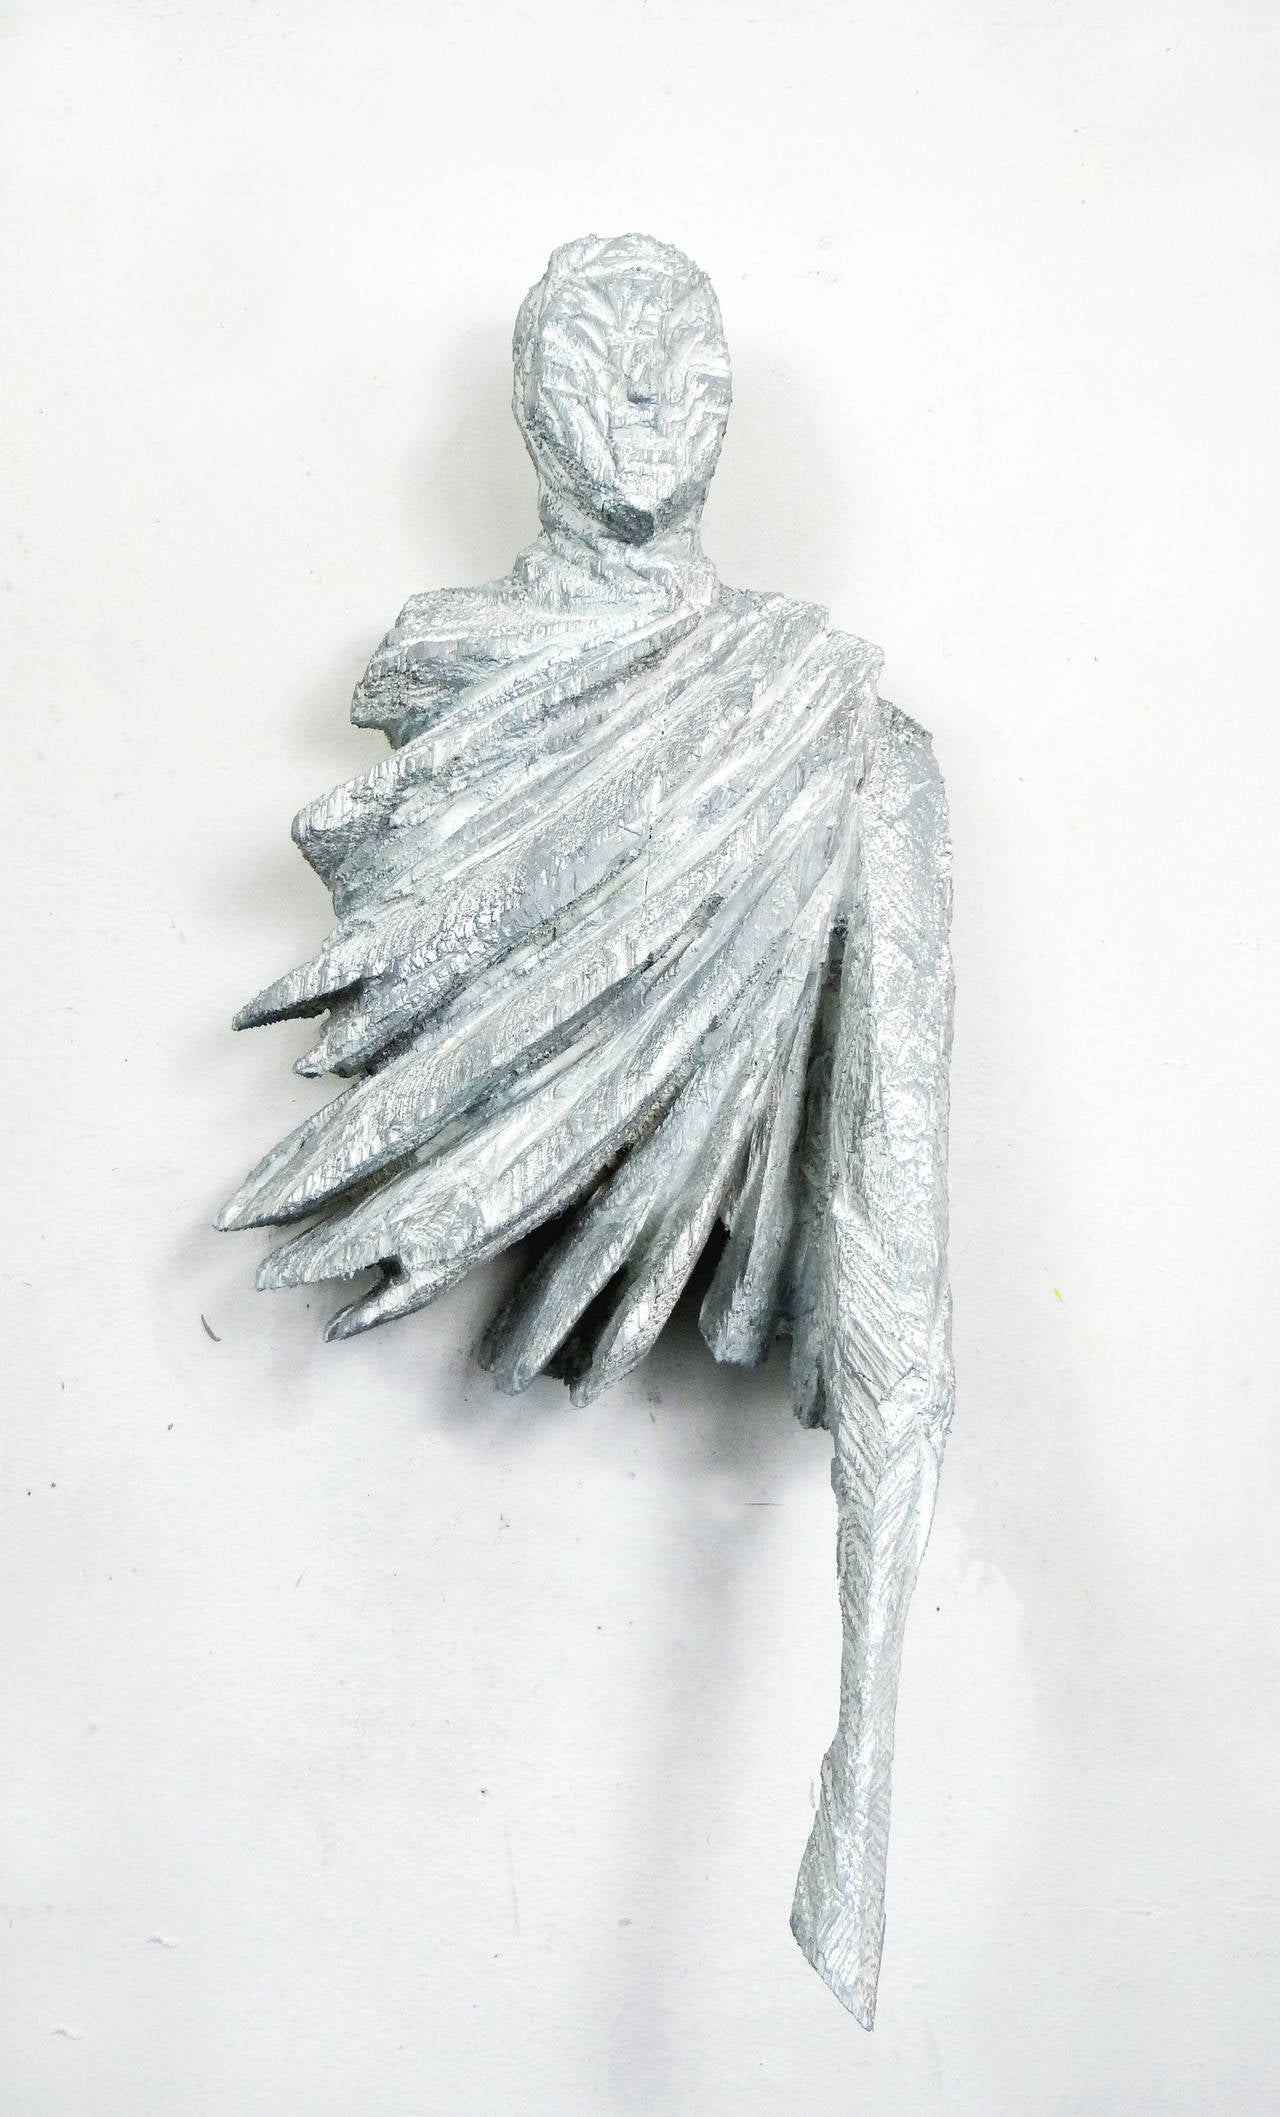 Wall Body - Sculpture by Christofer Kochs